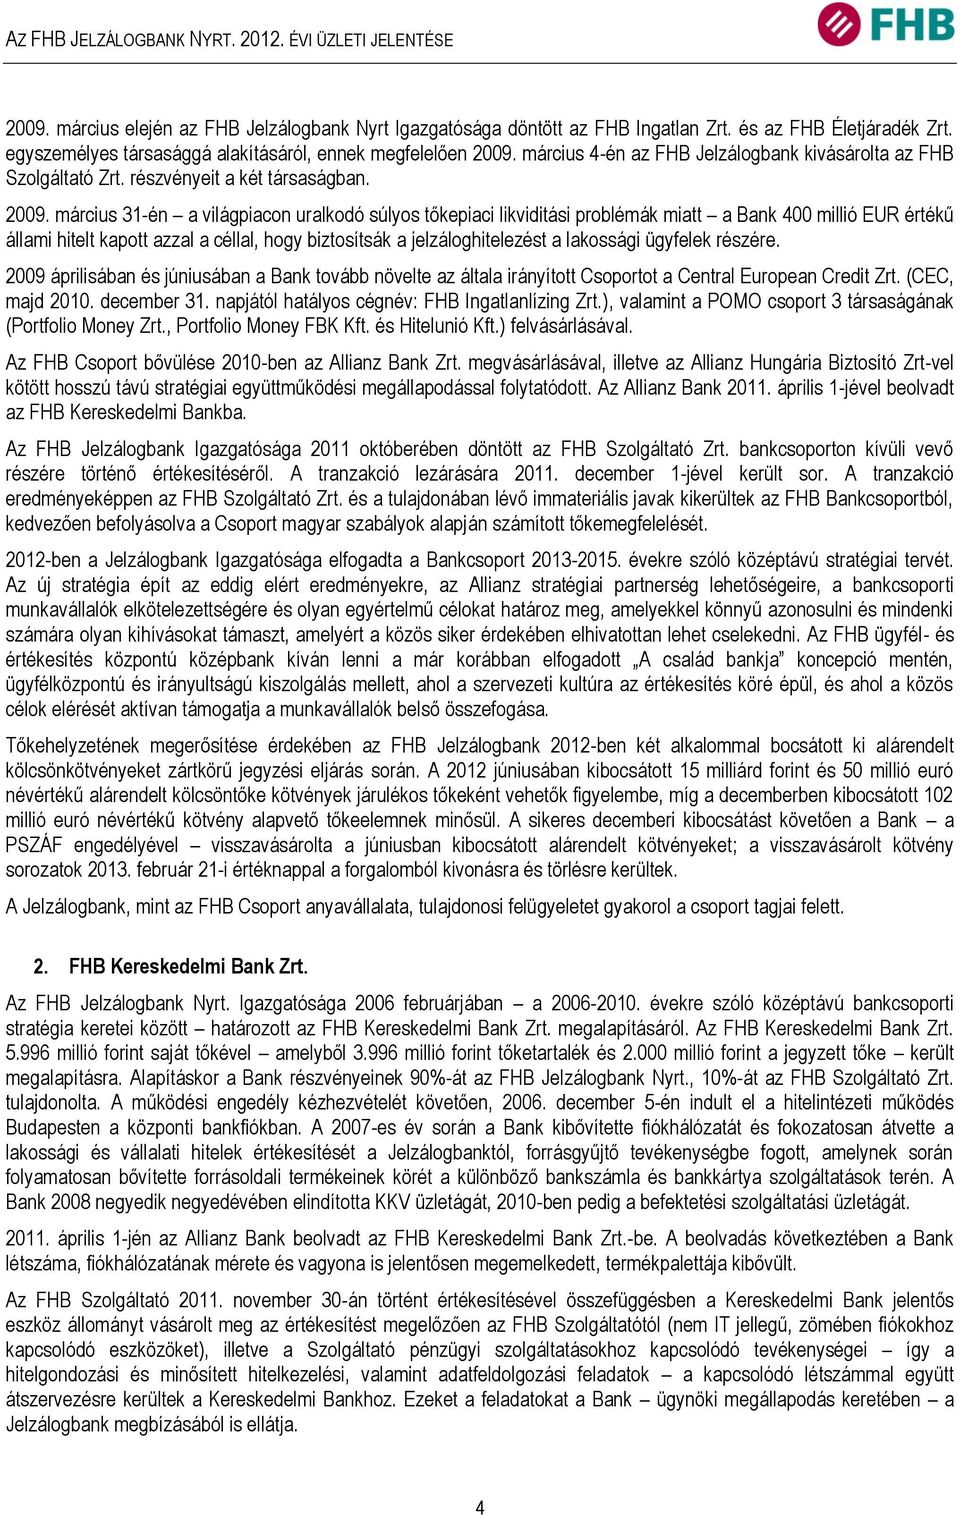 március 4-én az FHB Jelzálogbank kivásárolta az FHB Szolgáltató Zrt. részvényeit a két társaságban. 2009.